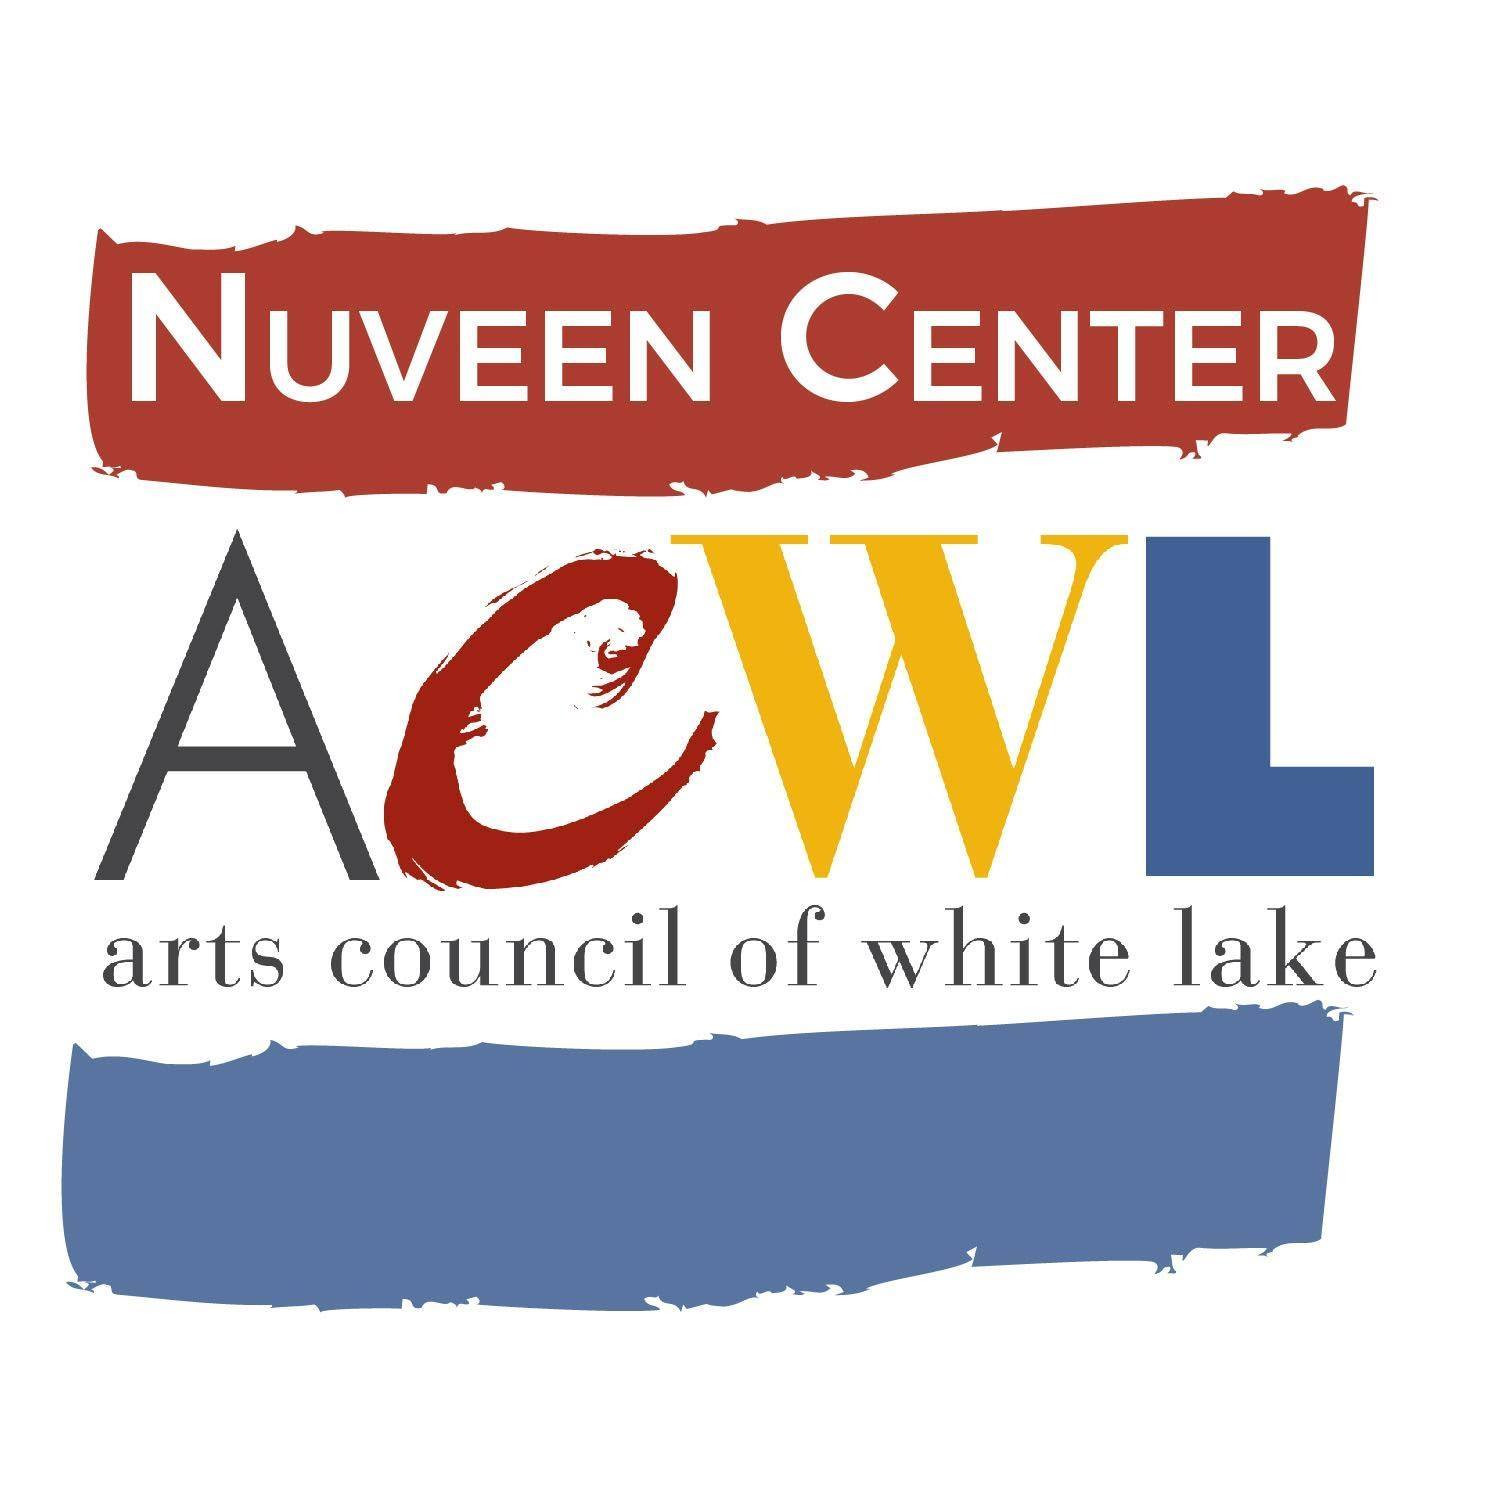 Art Council of White Lake